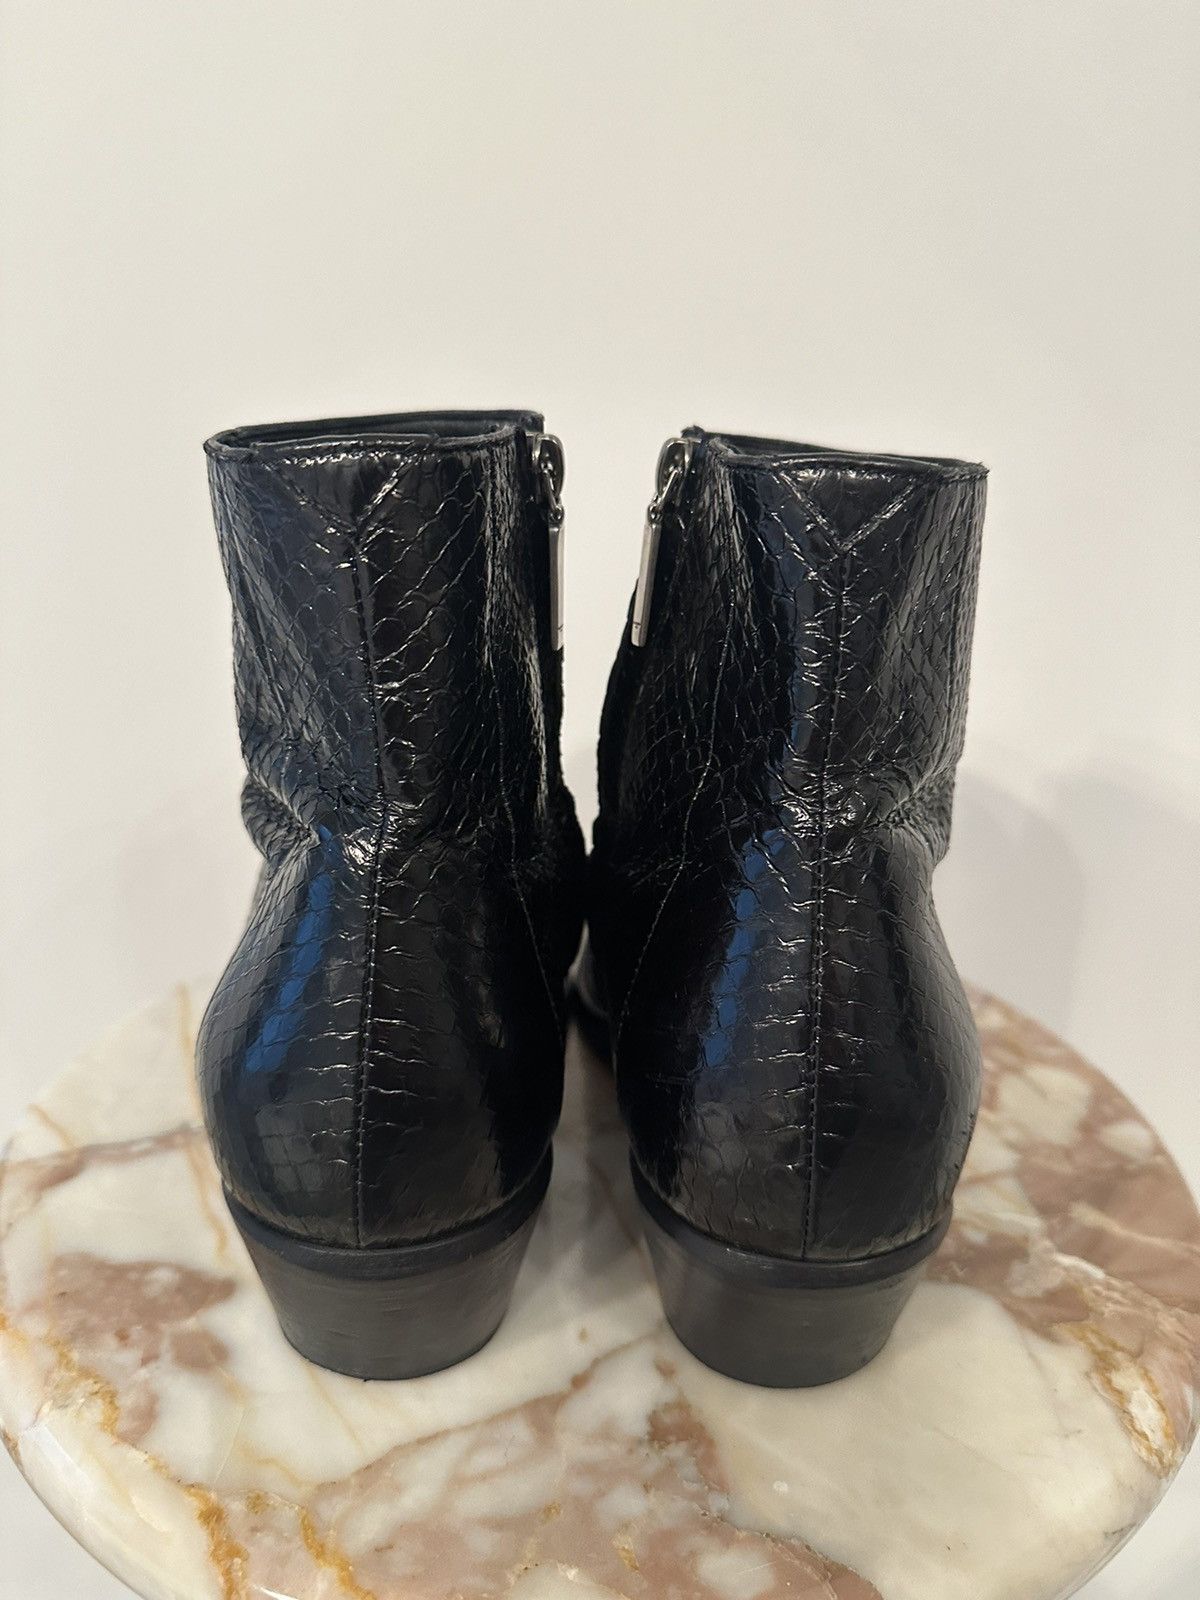 Ysl Rive Gauche By Hedi Slimane YSL Snake Skin Boots Size US 10 / EU 43 - 3 Thumbnail